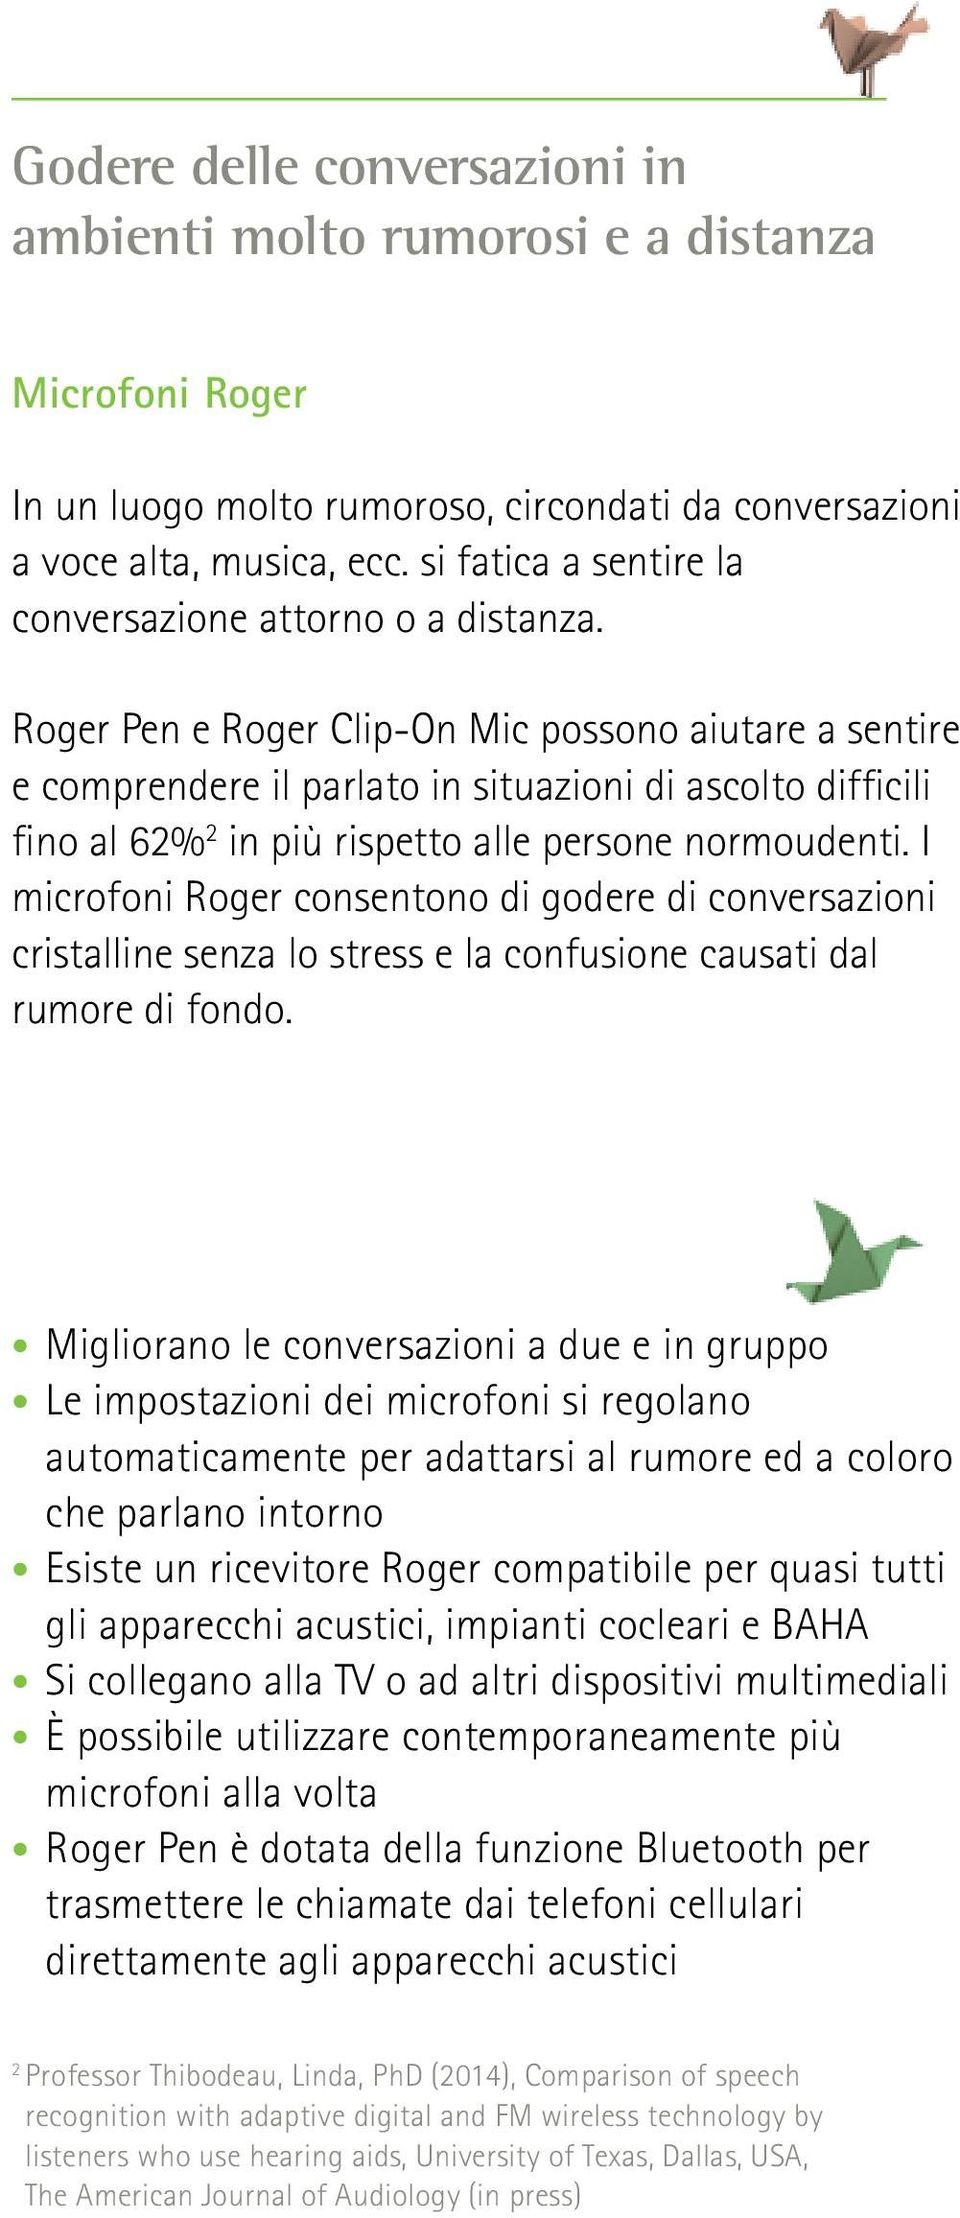 Roger Pen e Roger Clip-On Mic possono aiutare a sentire e comprendere il parlato in situazioni di ascolto difficili fino al 62% 2 in più rispetto alle persone normoudenti.